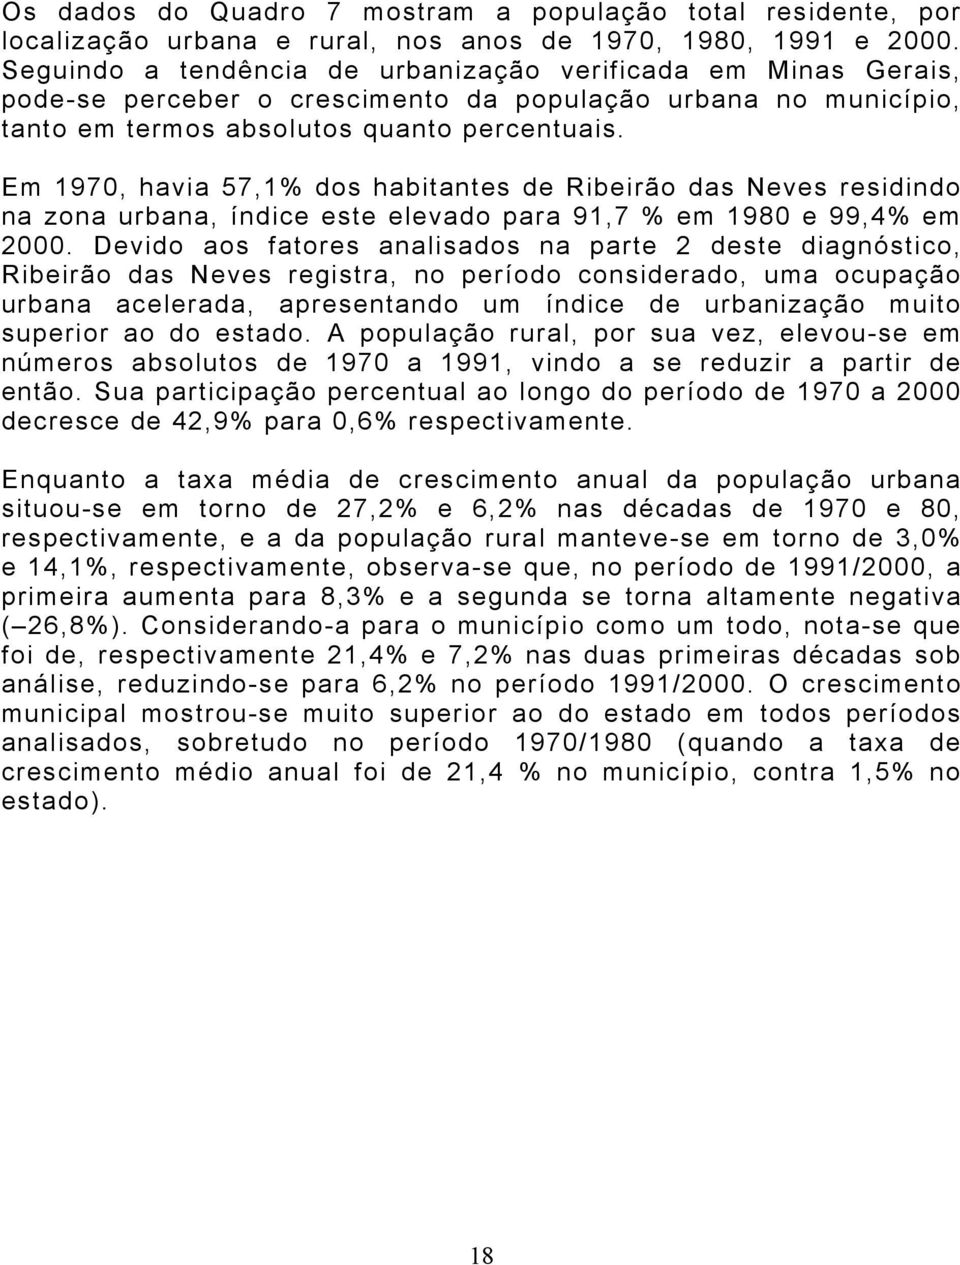 Em 1970, havia 57,1% dos habitantes de Ribeirão das Neves residindo na zona urbana, índice este elevado para 91,7 % em 1980 e 99,4% em 2000.